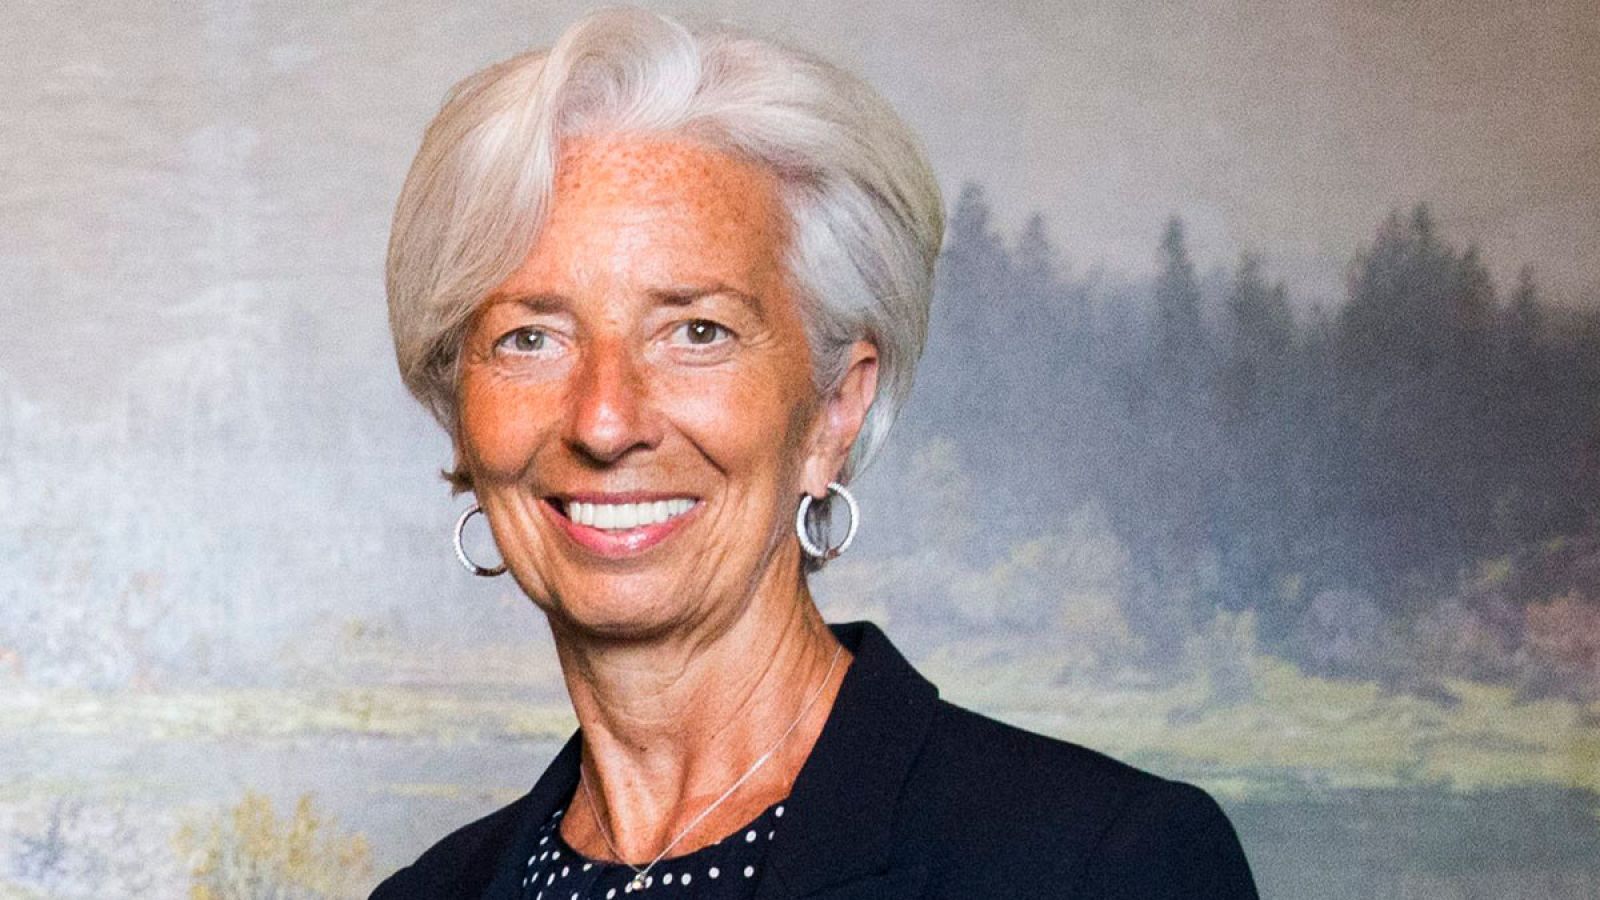 La directora gerente del FMI Christine Lagarde